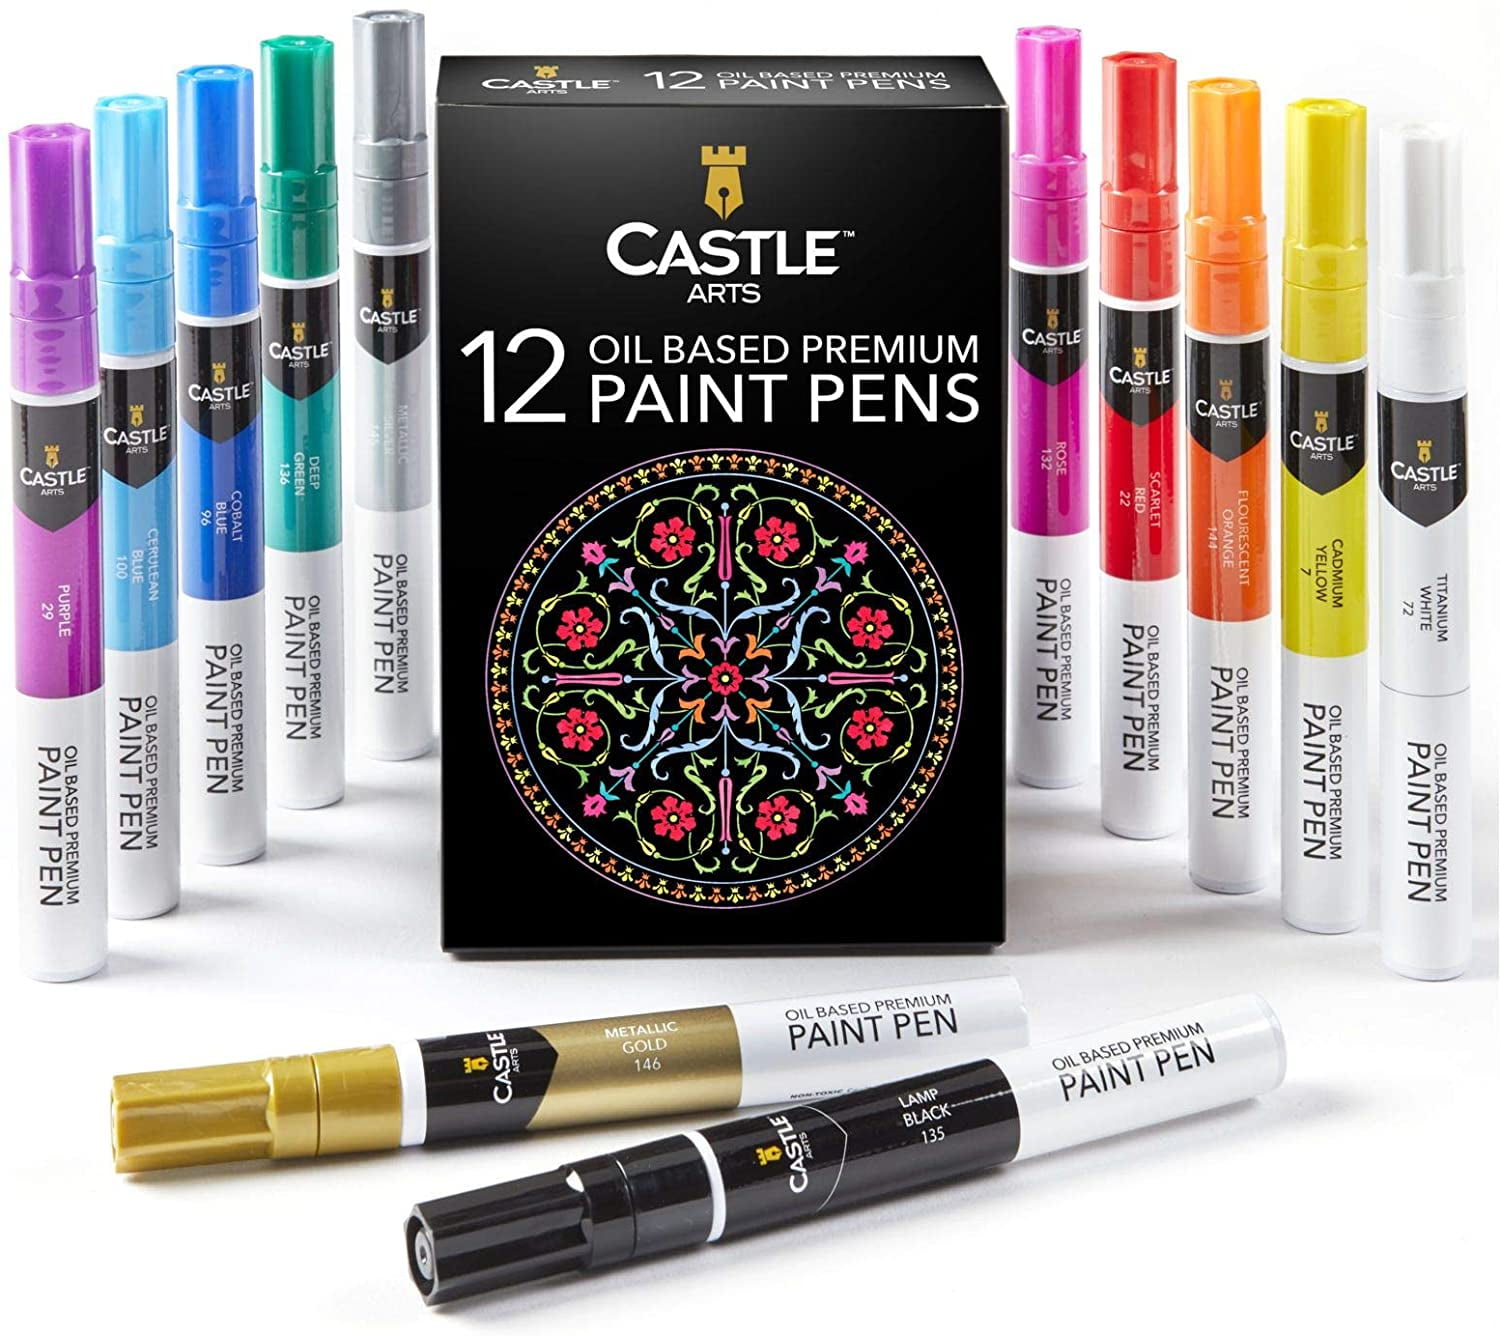 (NET)M&G Acrylic Marker Set / 12 colors